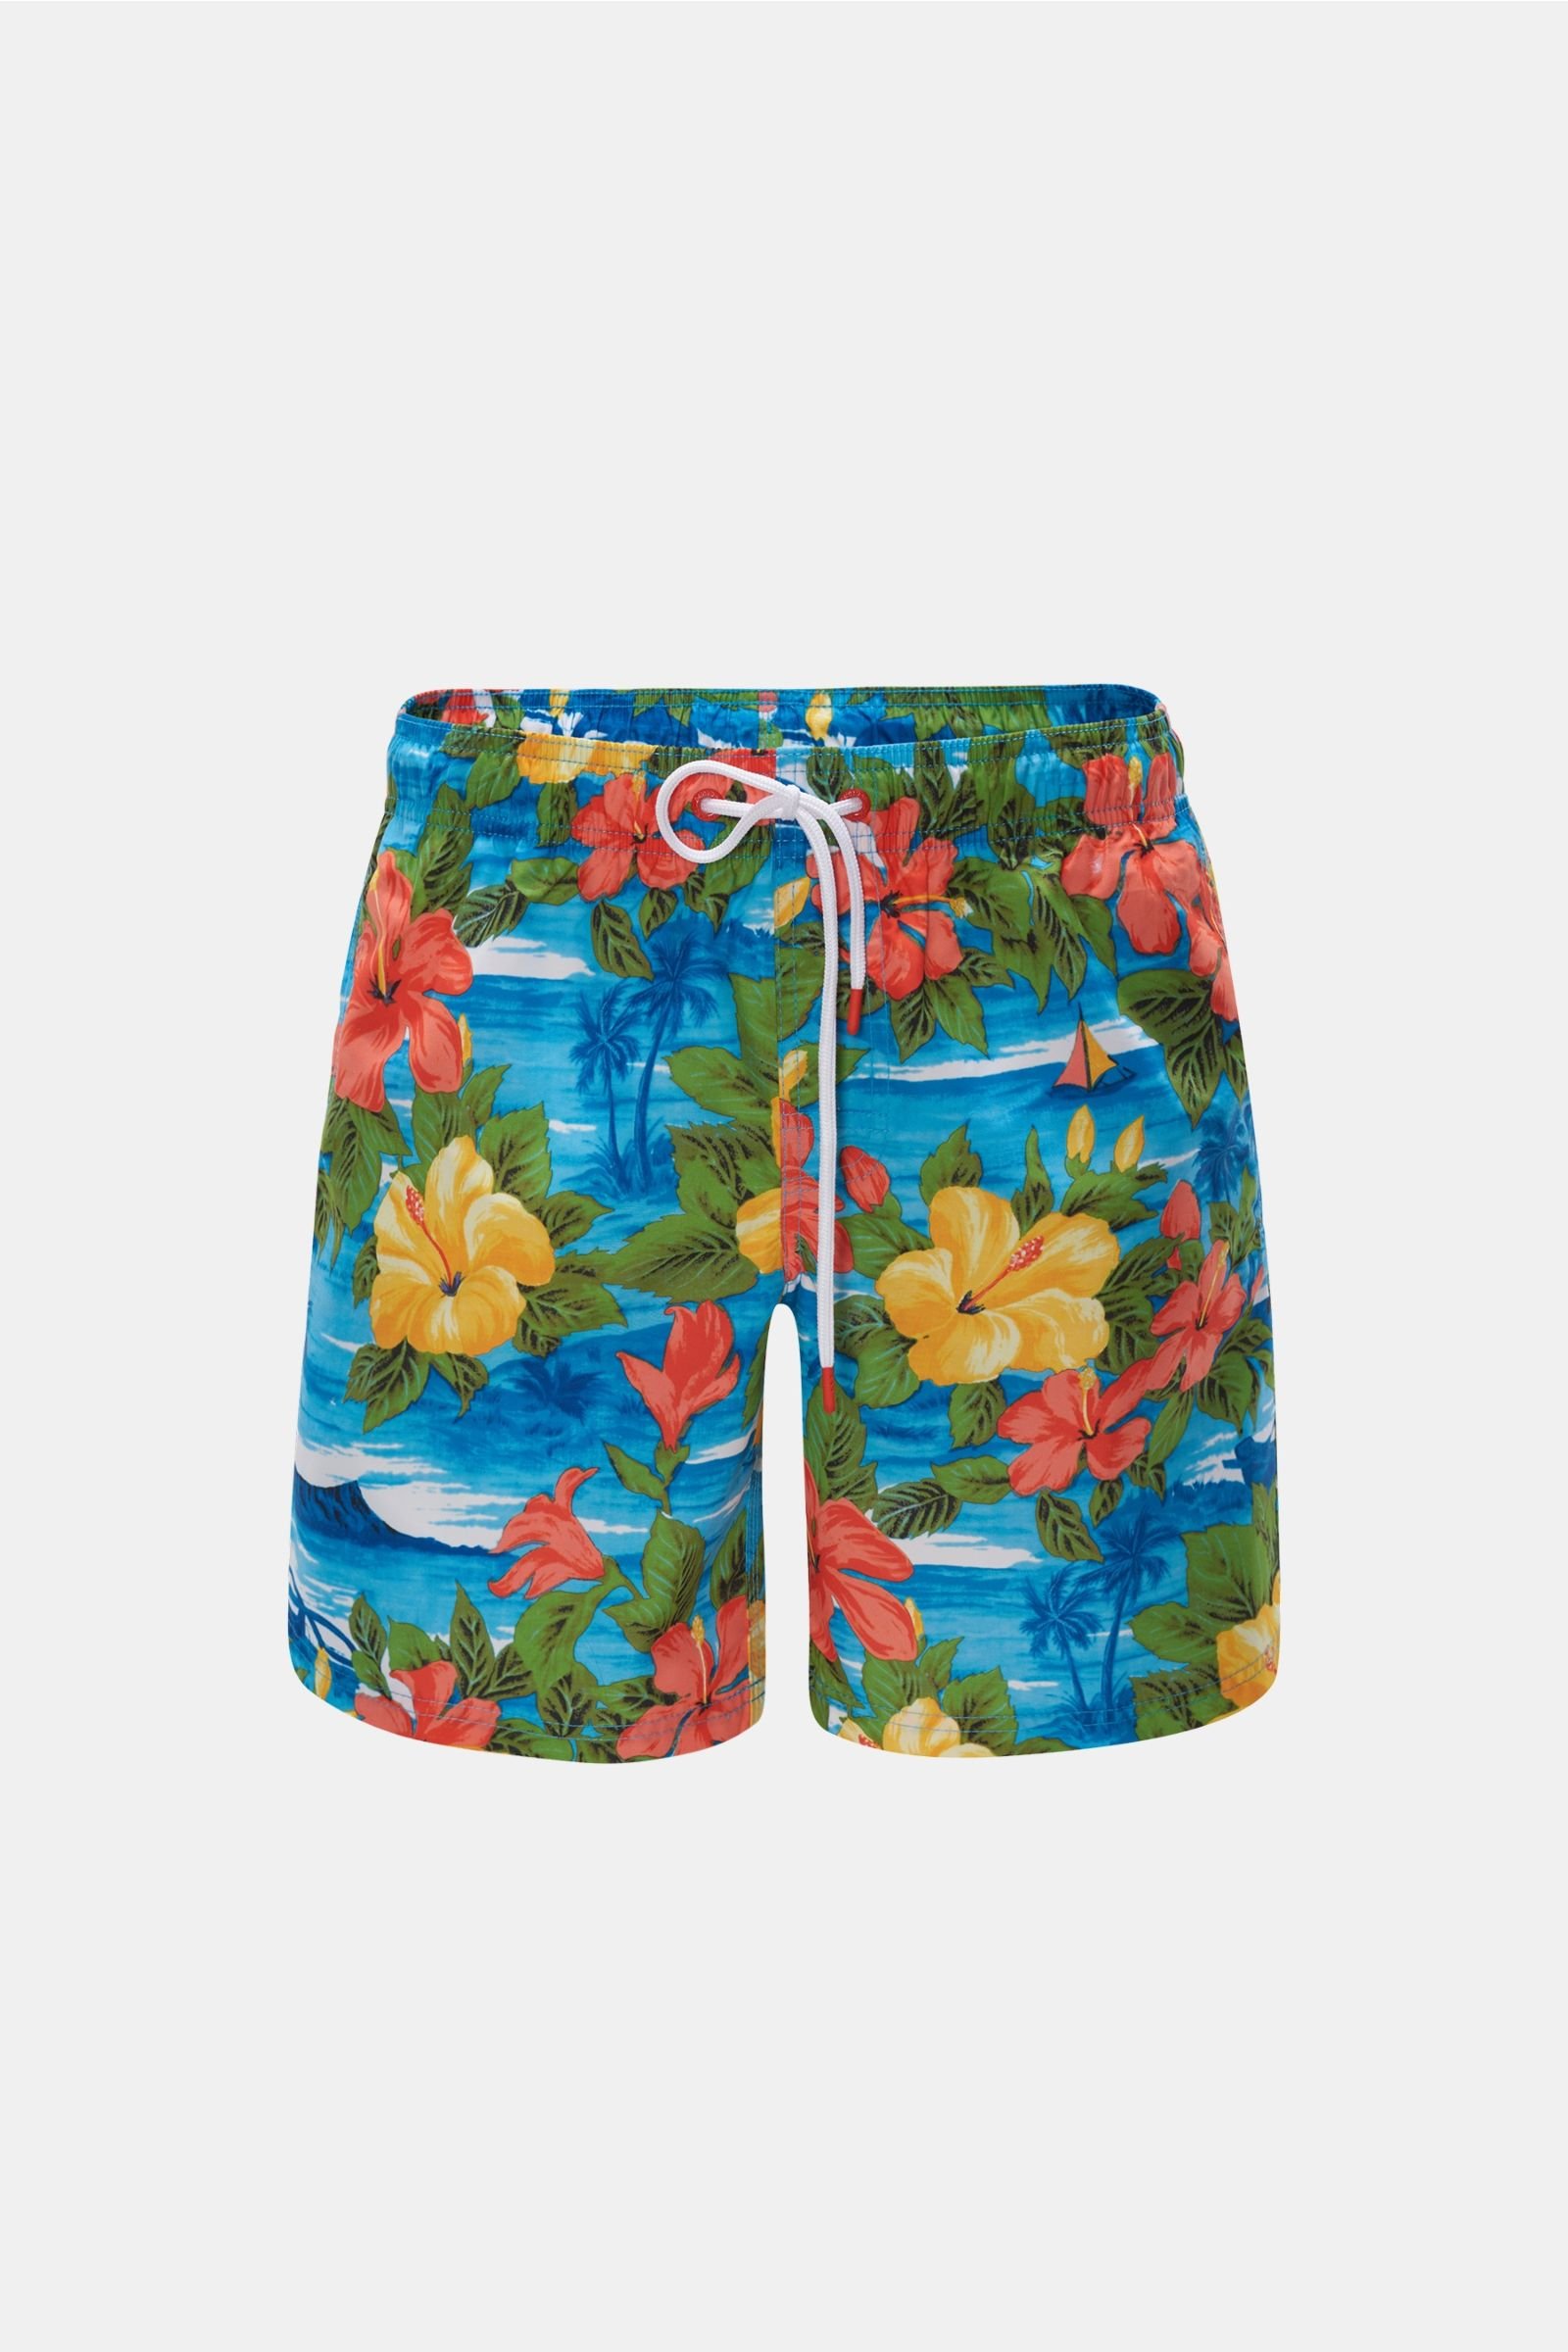 Swim shorts azure/yellow patterned